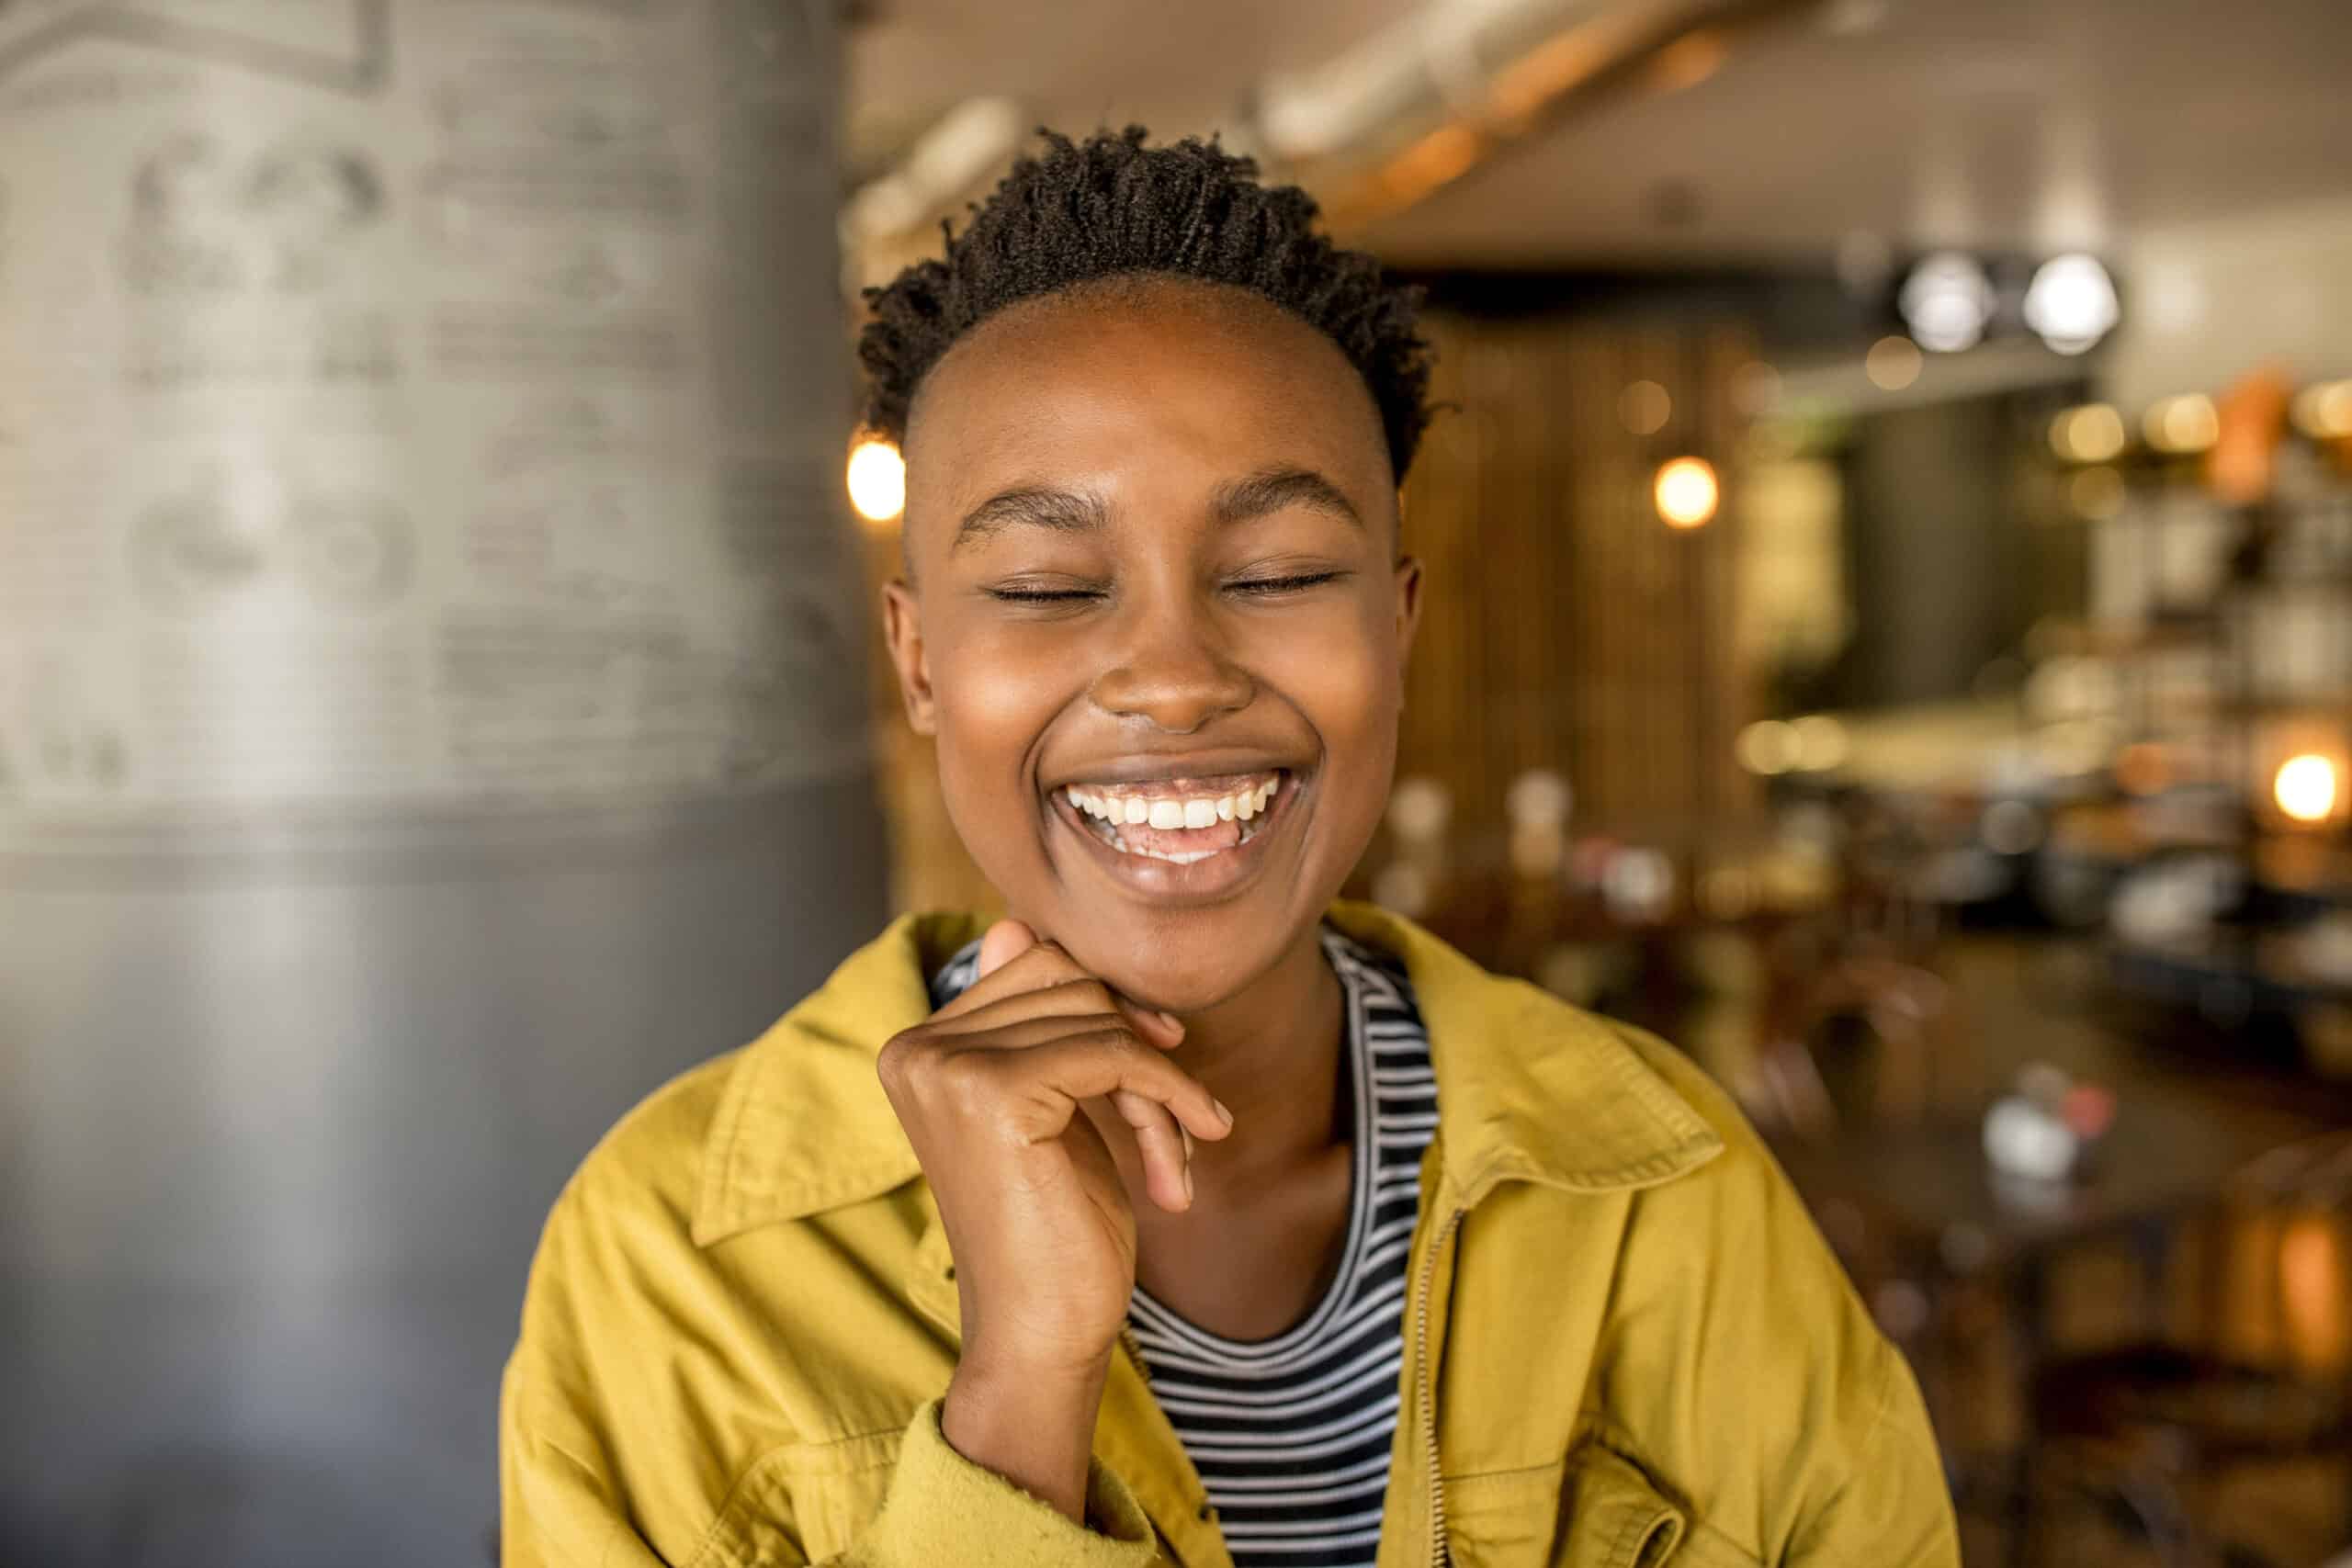 Eine fröhliche junge schwarze Frau mit kurzen Haaren, eine gelbe Jacke und ein gestreiftes Oberteil tragend, lacht mit geschlossenen Augen und der Hand am Kinn in einem warm beleuchteten Café. © Fotografie Tomas Rodriguez